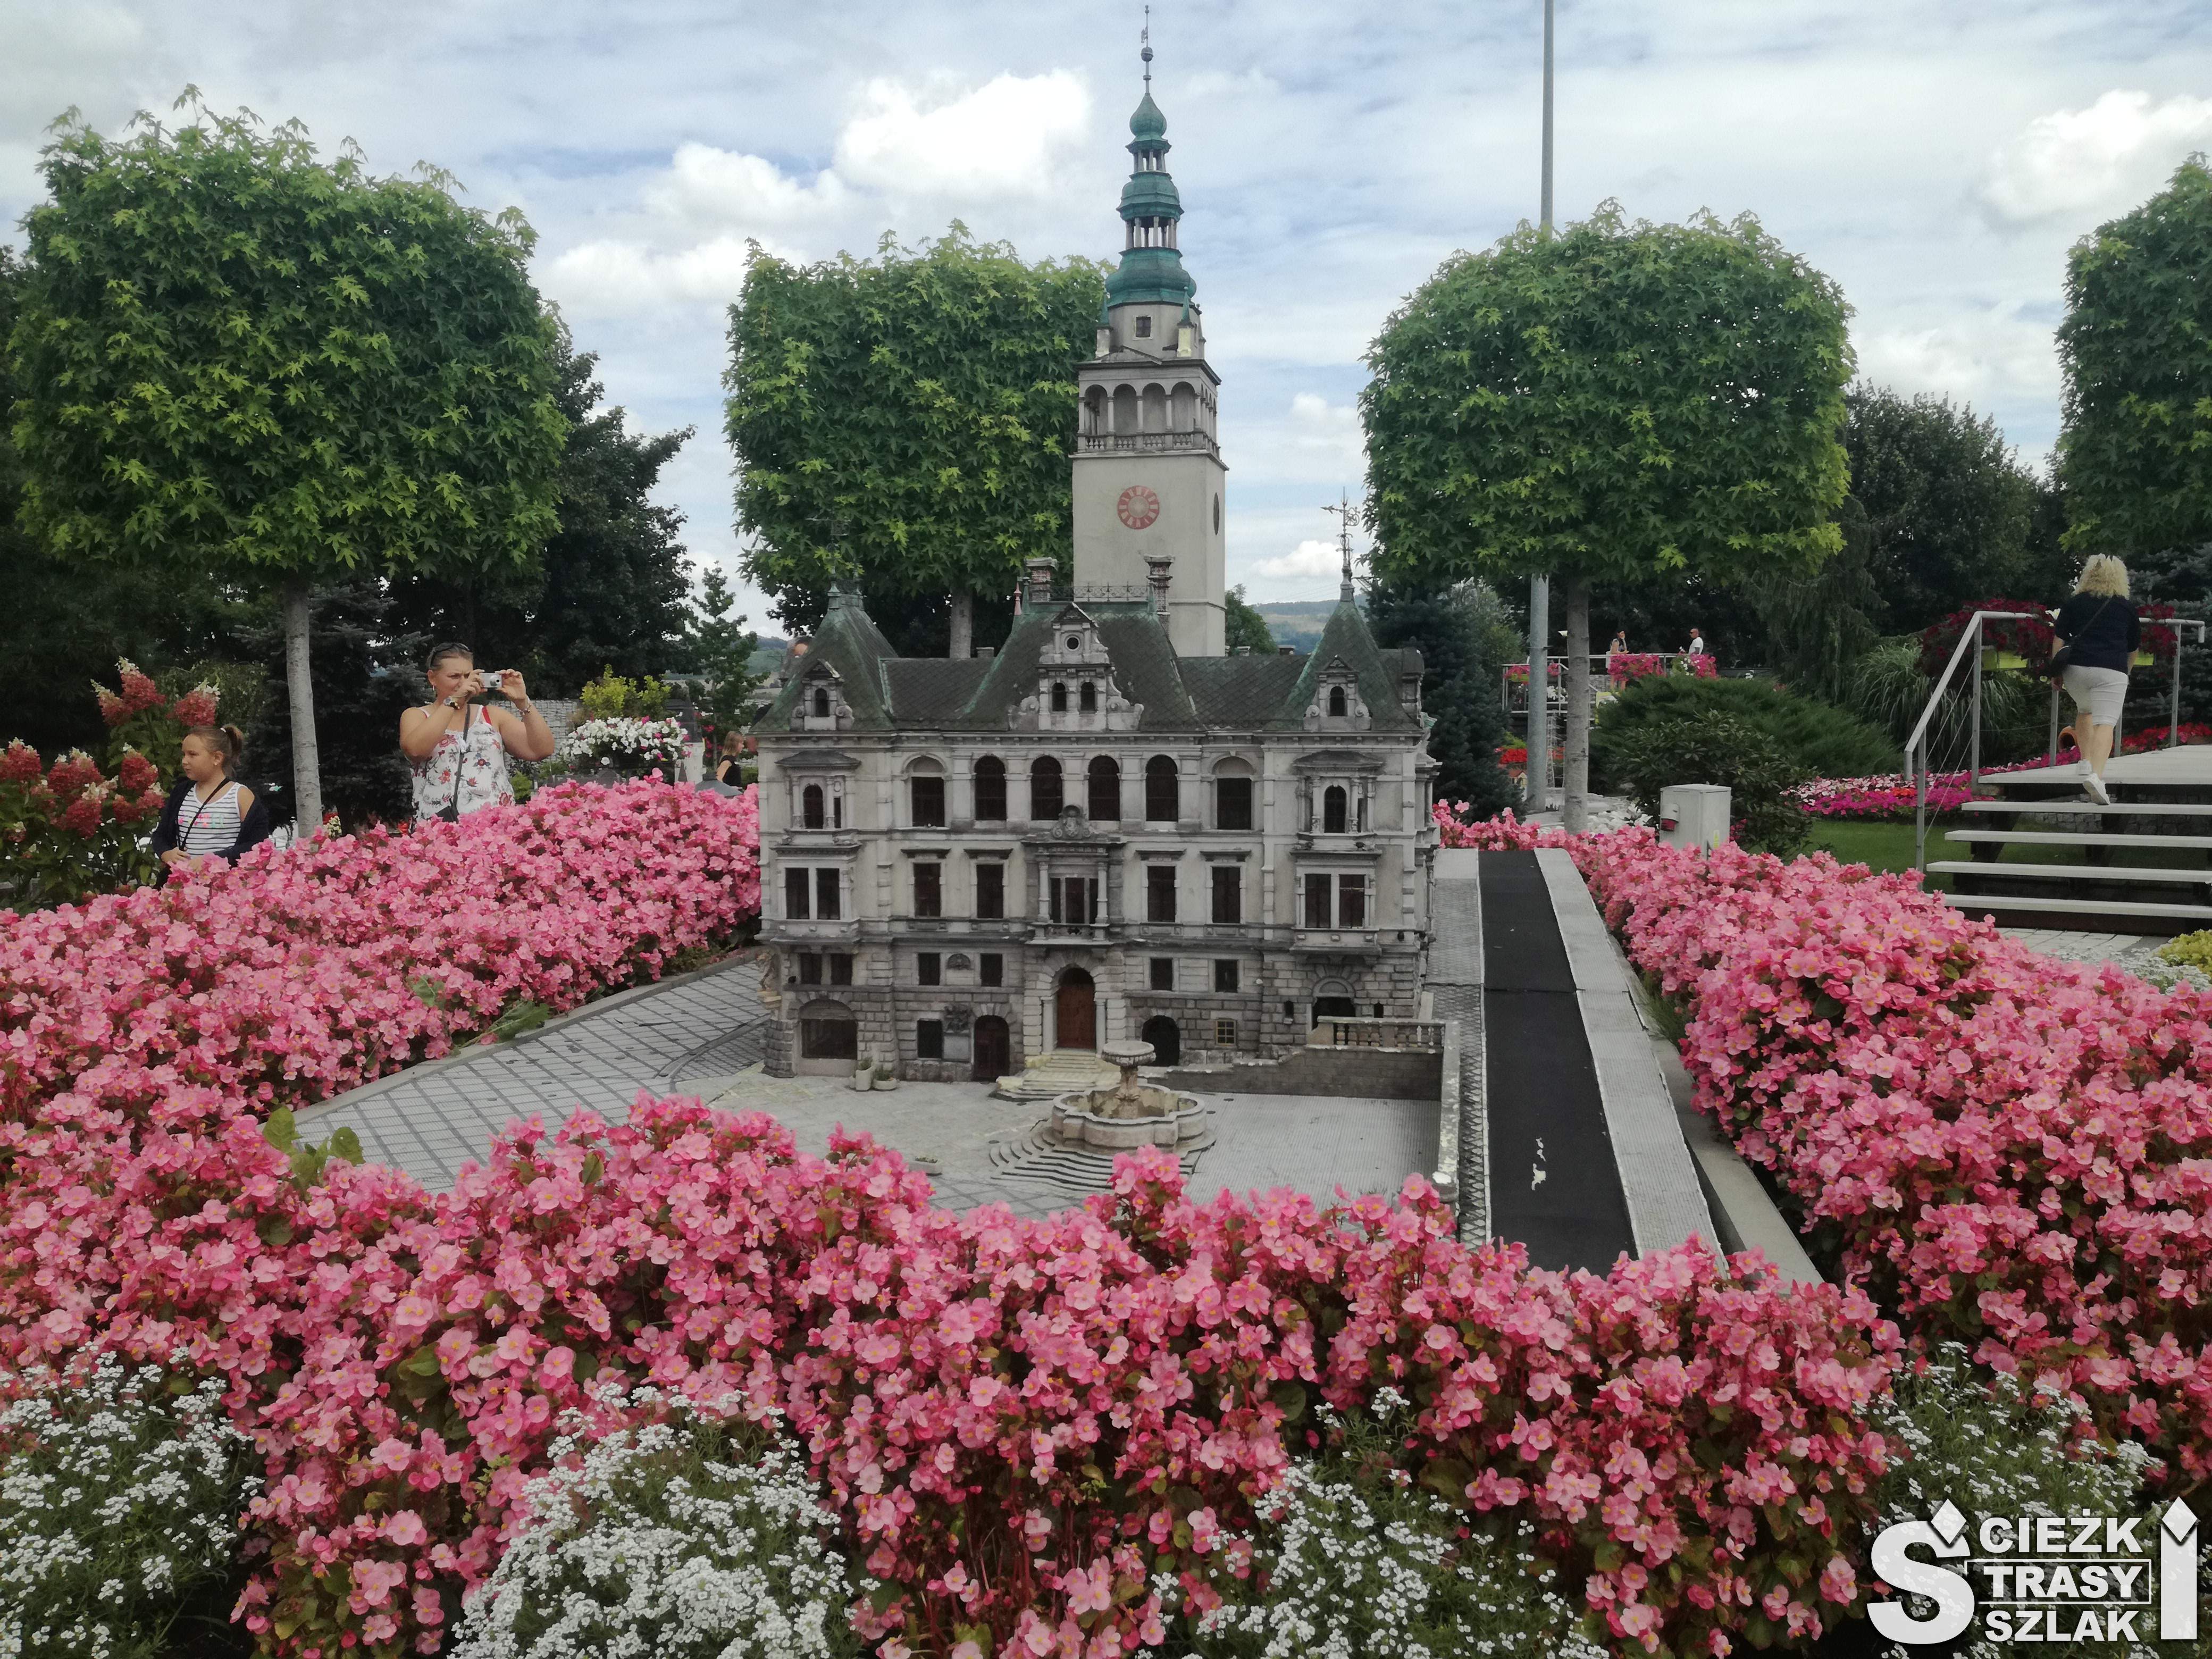 Miniatura kościoła Franciszkanów otoczona różowymi kwiatami i drzewami w tle z Parku Miniatur Minieuroland